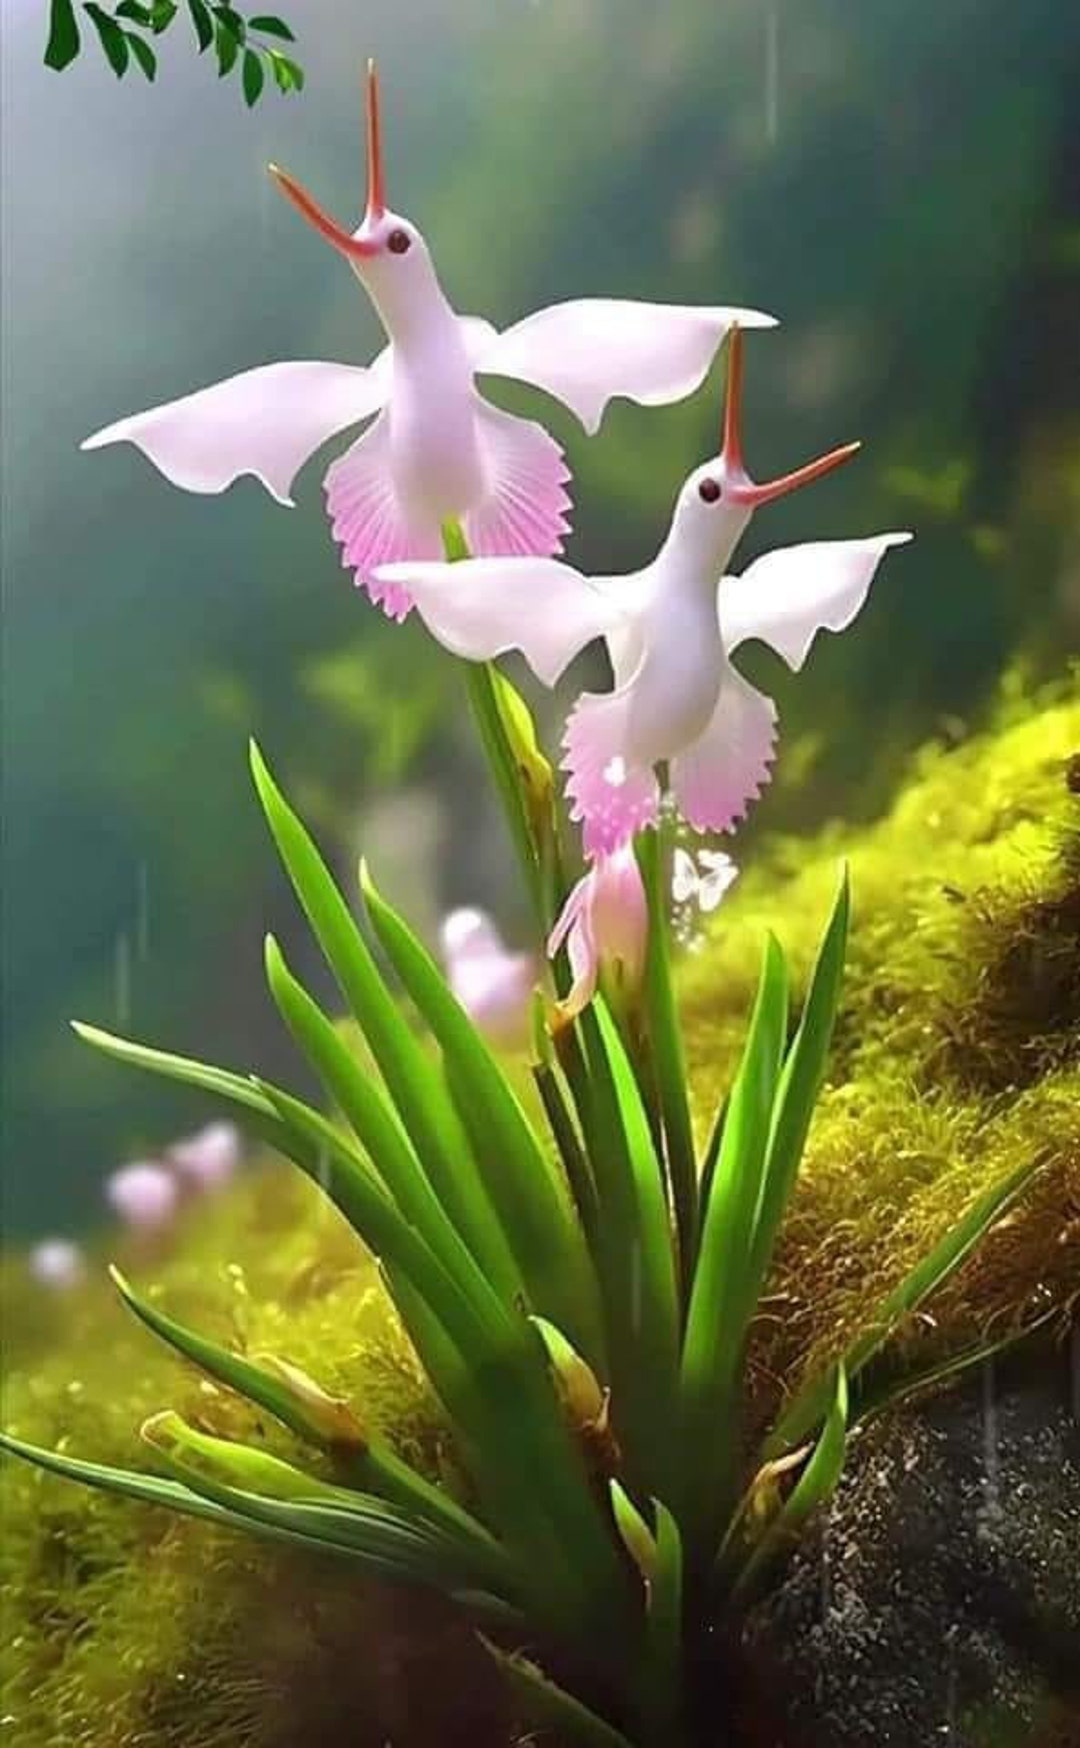 Tengo de venta orquídeas naturales muy hermosas. Y vendo por mayoreo. -  Garden Items - Bakersfield, California